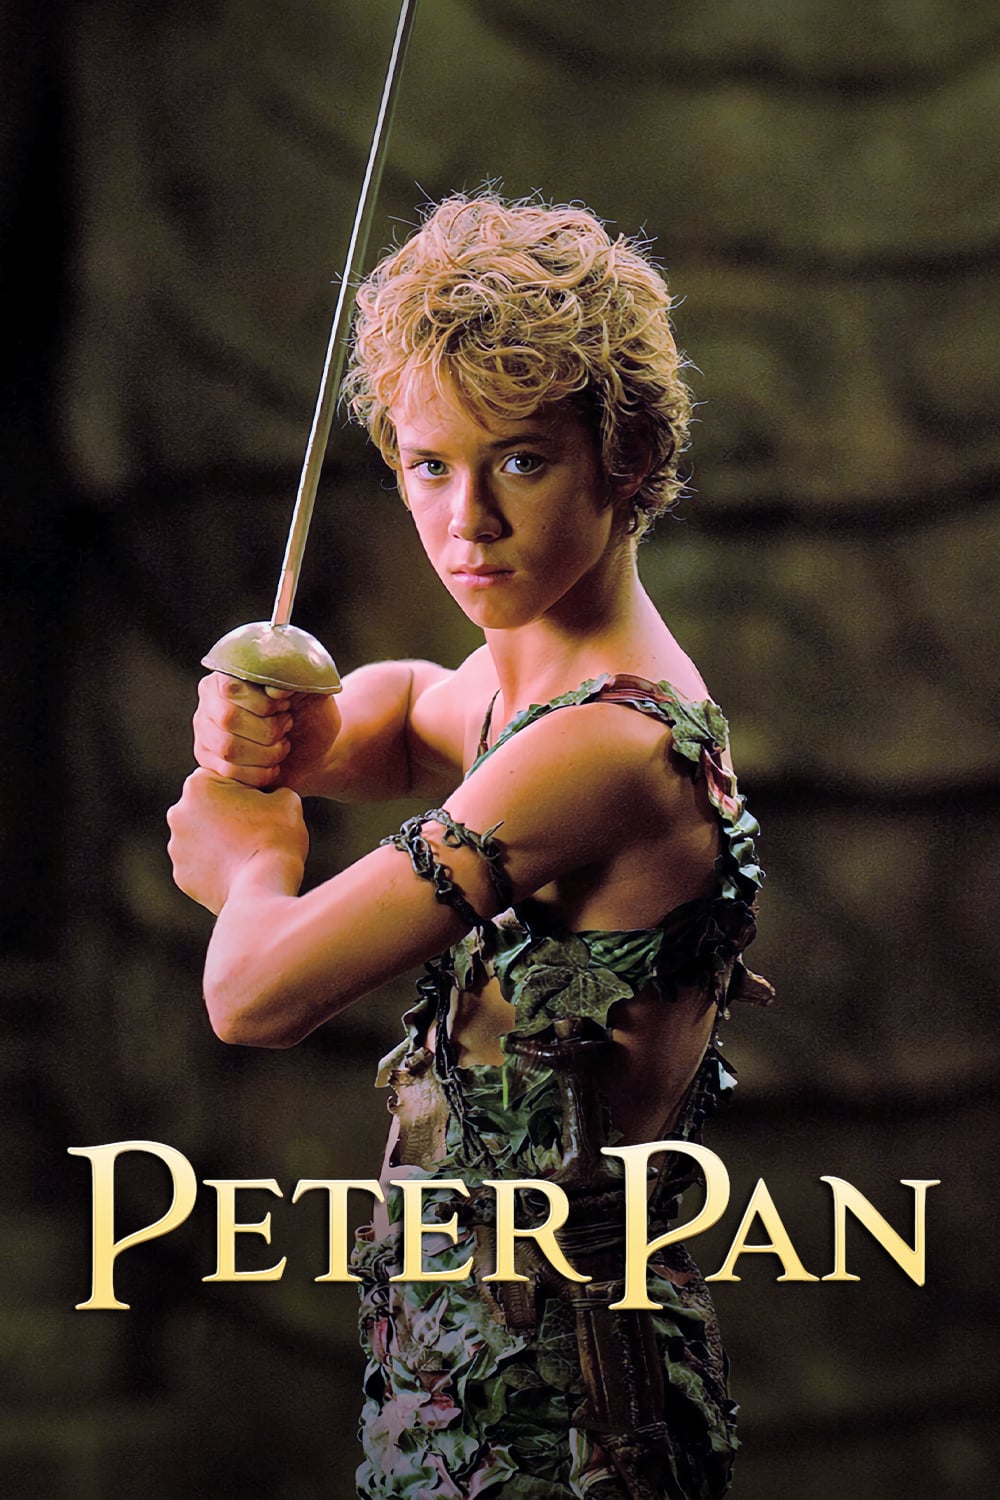 peter pan 2003 movie poster